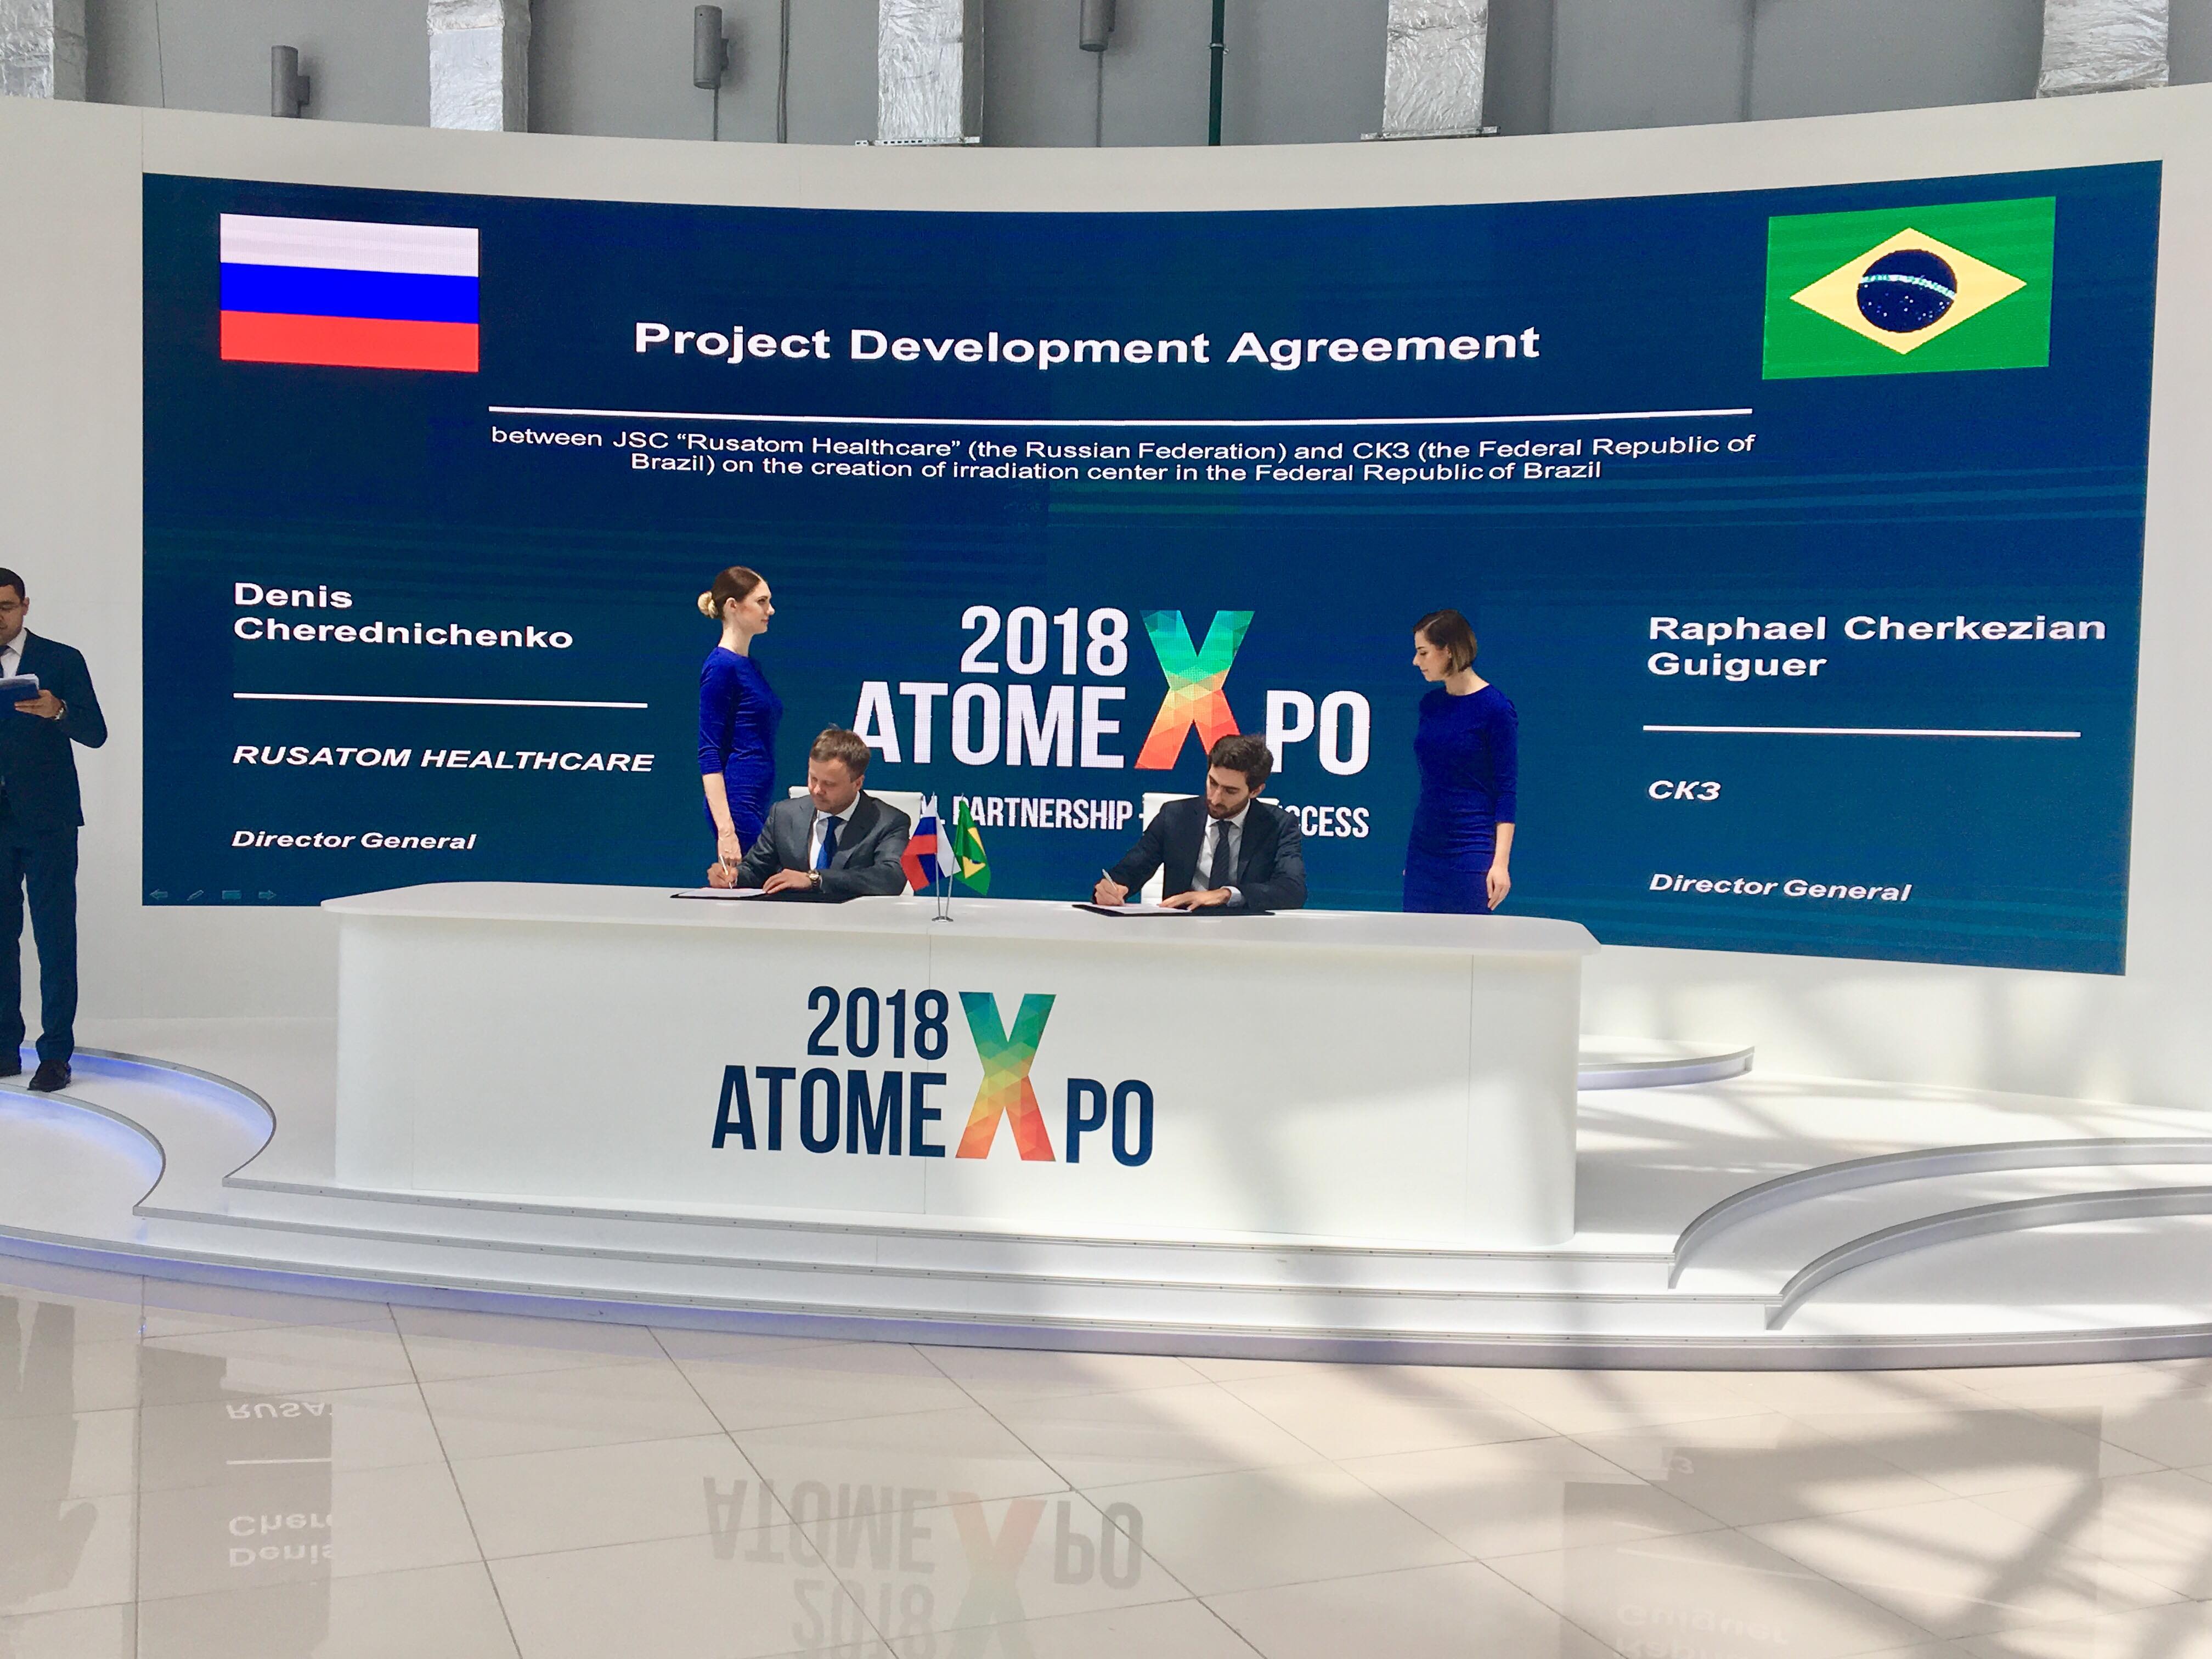 A Rosatom Healthcare e a empresa brasileira CK3 assinaram um Acordo de Desenvolvimento de Projeto para a implementação do "Centro de irradiação no Brasil"